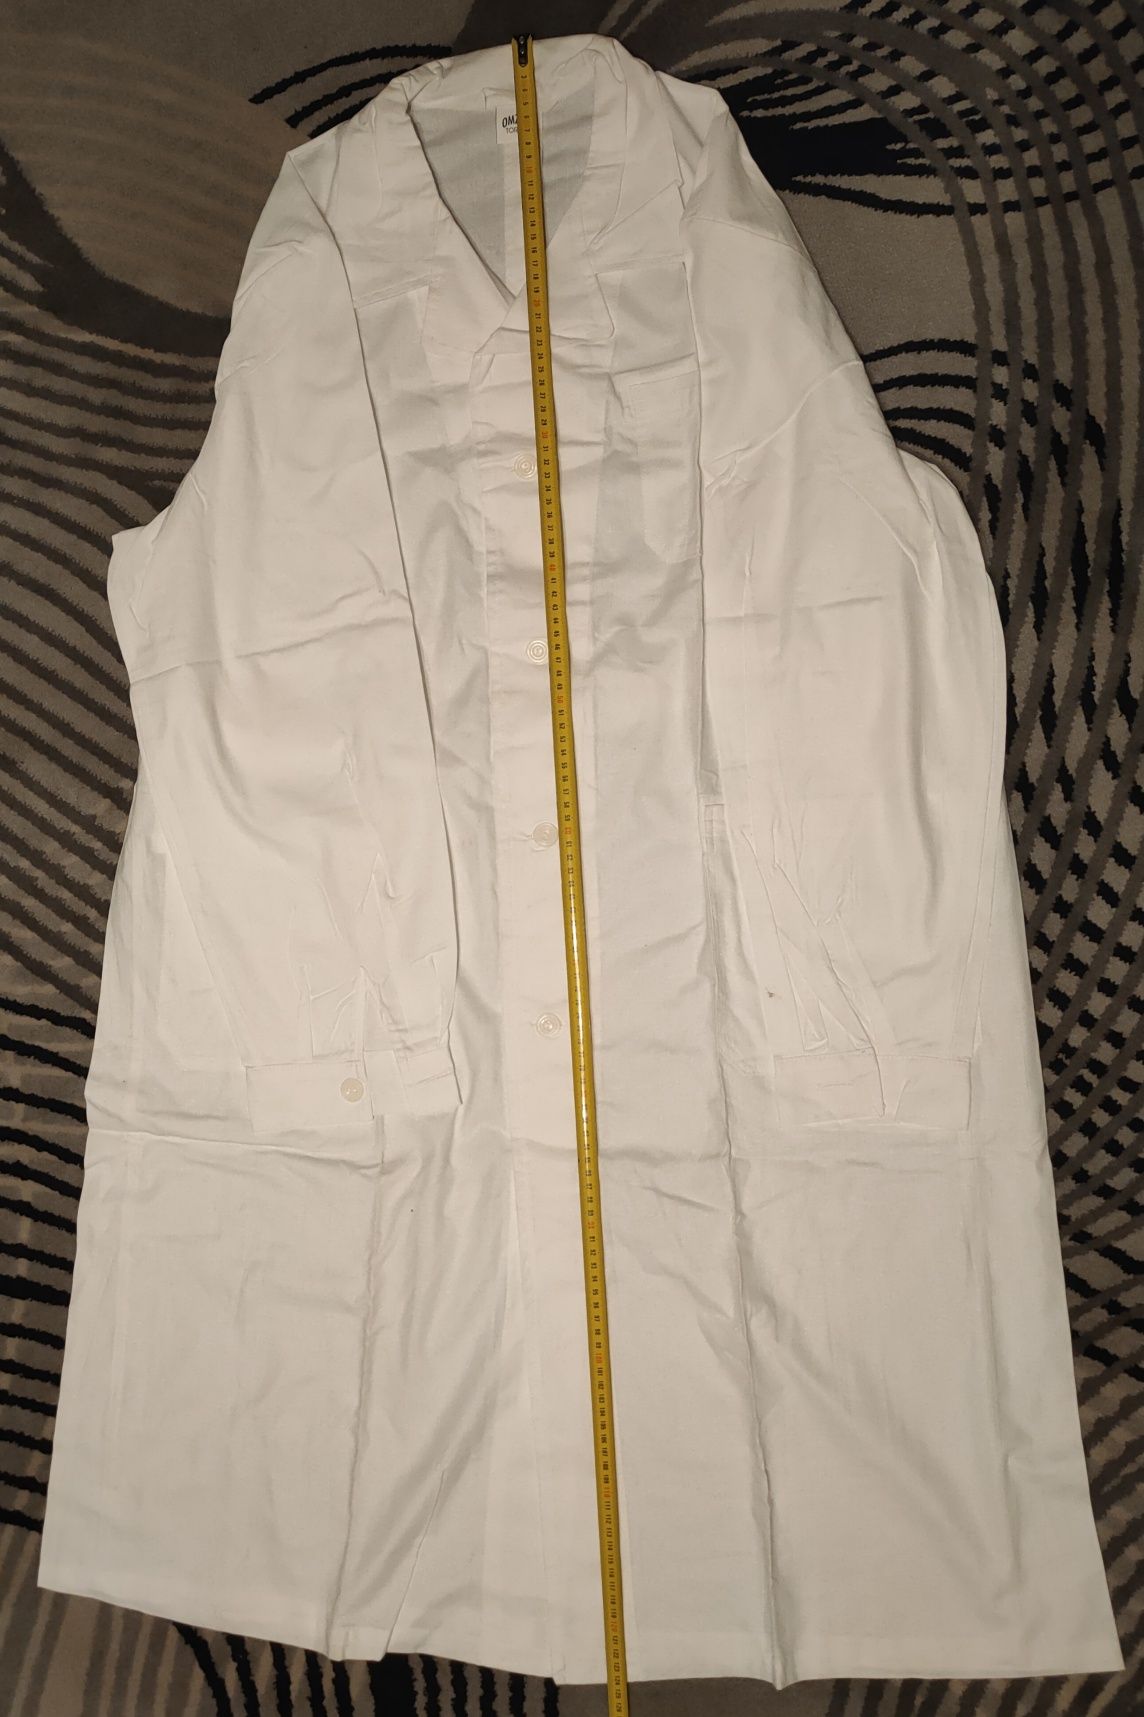 Fartuch płaszcz płucienny biały medyczny laboratoryjny